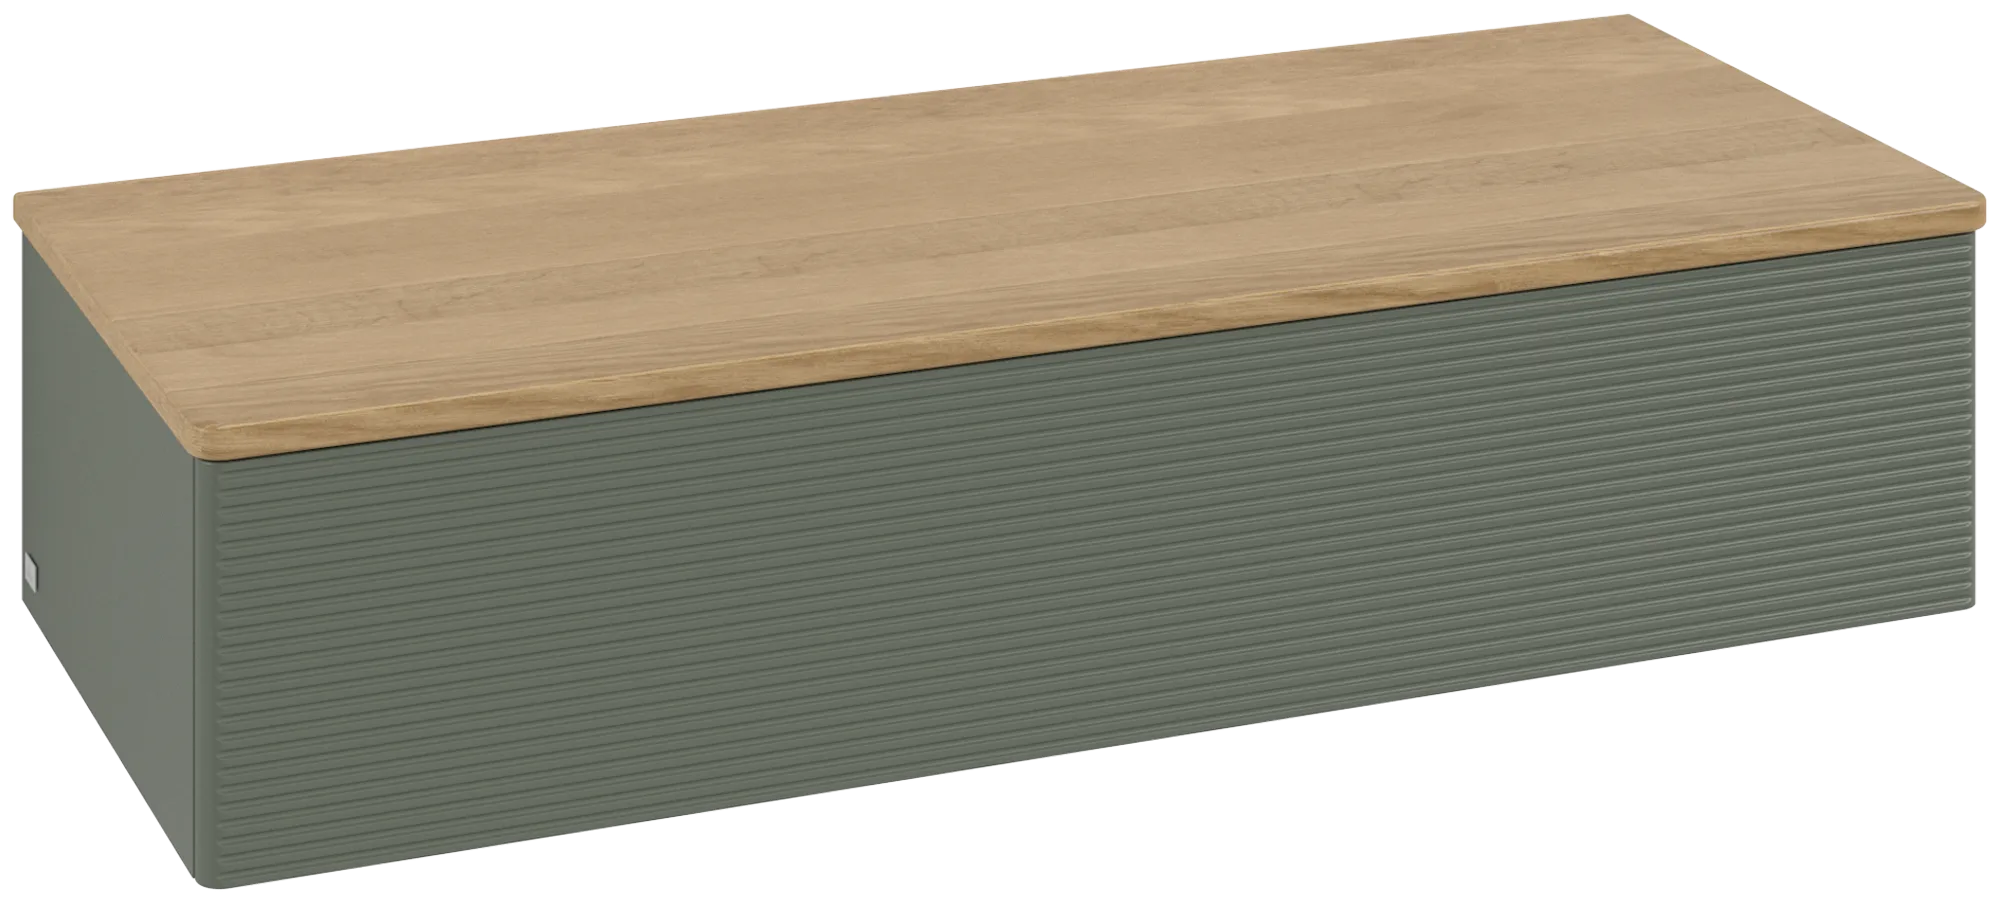 Bild von VILLEROY BOCH Antao Sideboard, 1 Auszug, 1200 x 268 x 500 mm, Front mit Struktur, Leaf Green Matt Lacquer / Honey Oak #K41101HL